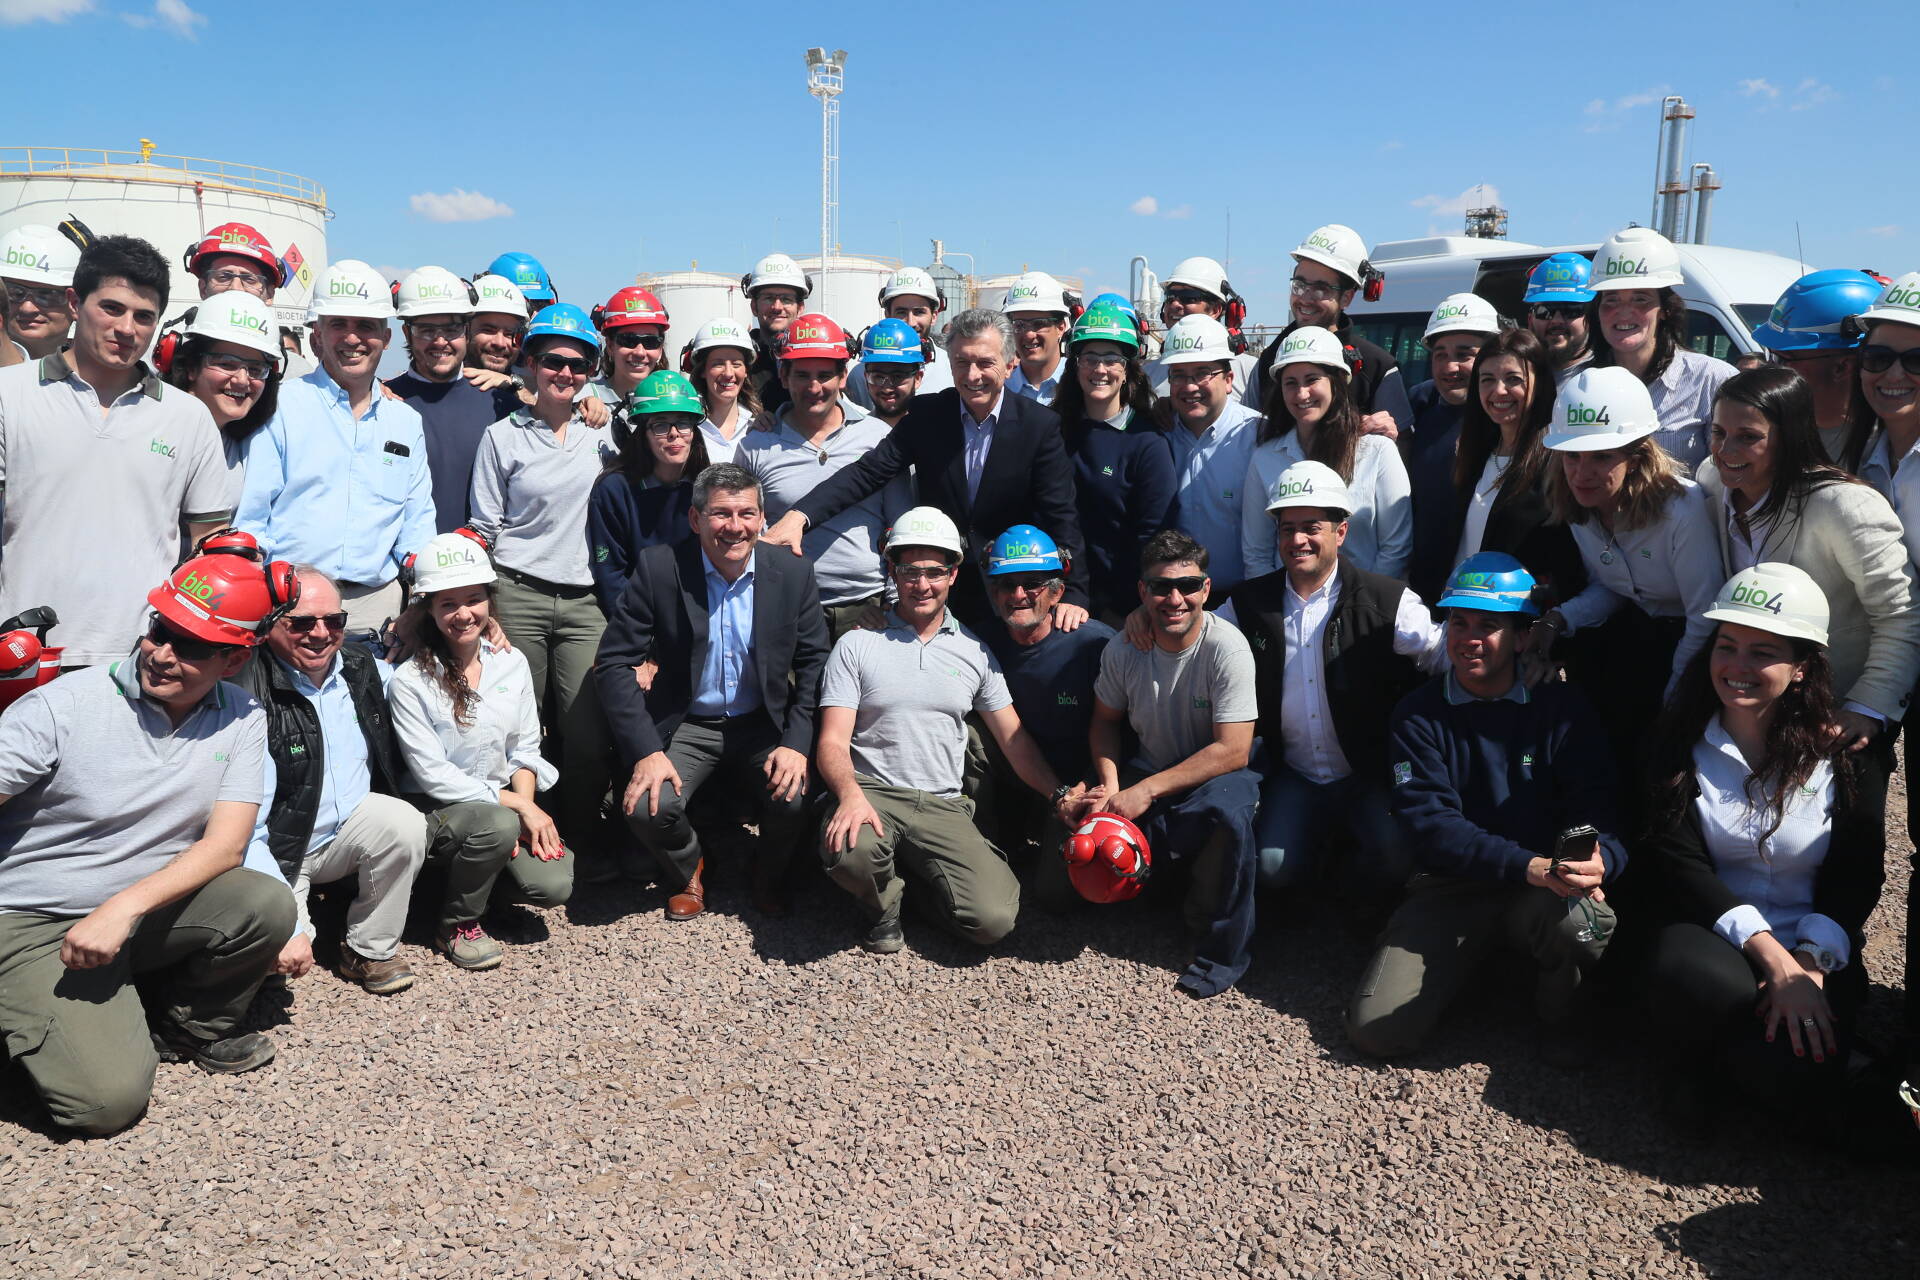 Macri inauguró en Córdoba una planta térmica que abastecerá a miles de familias con energía producida desde el campo